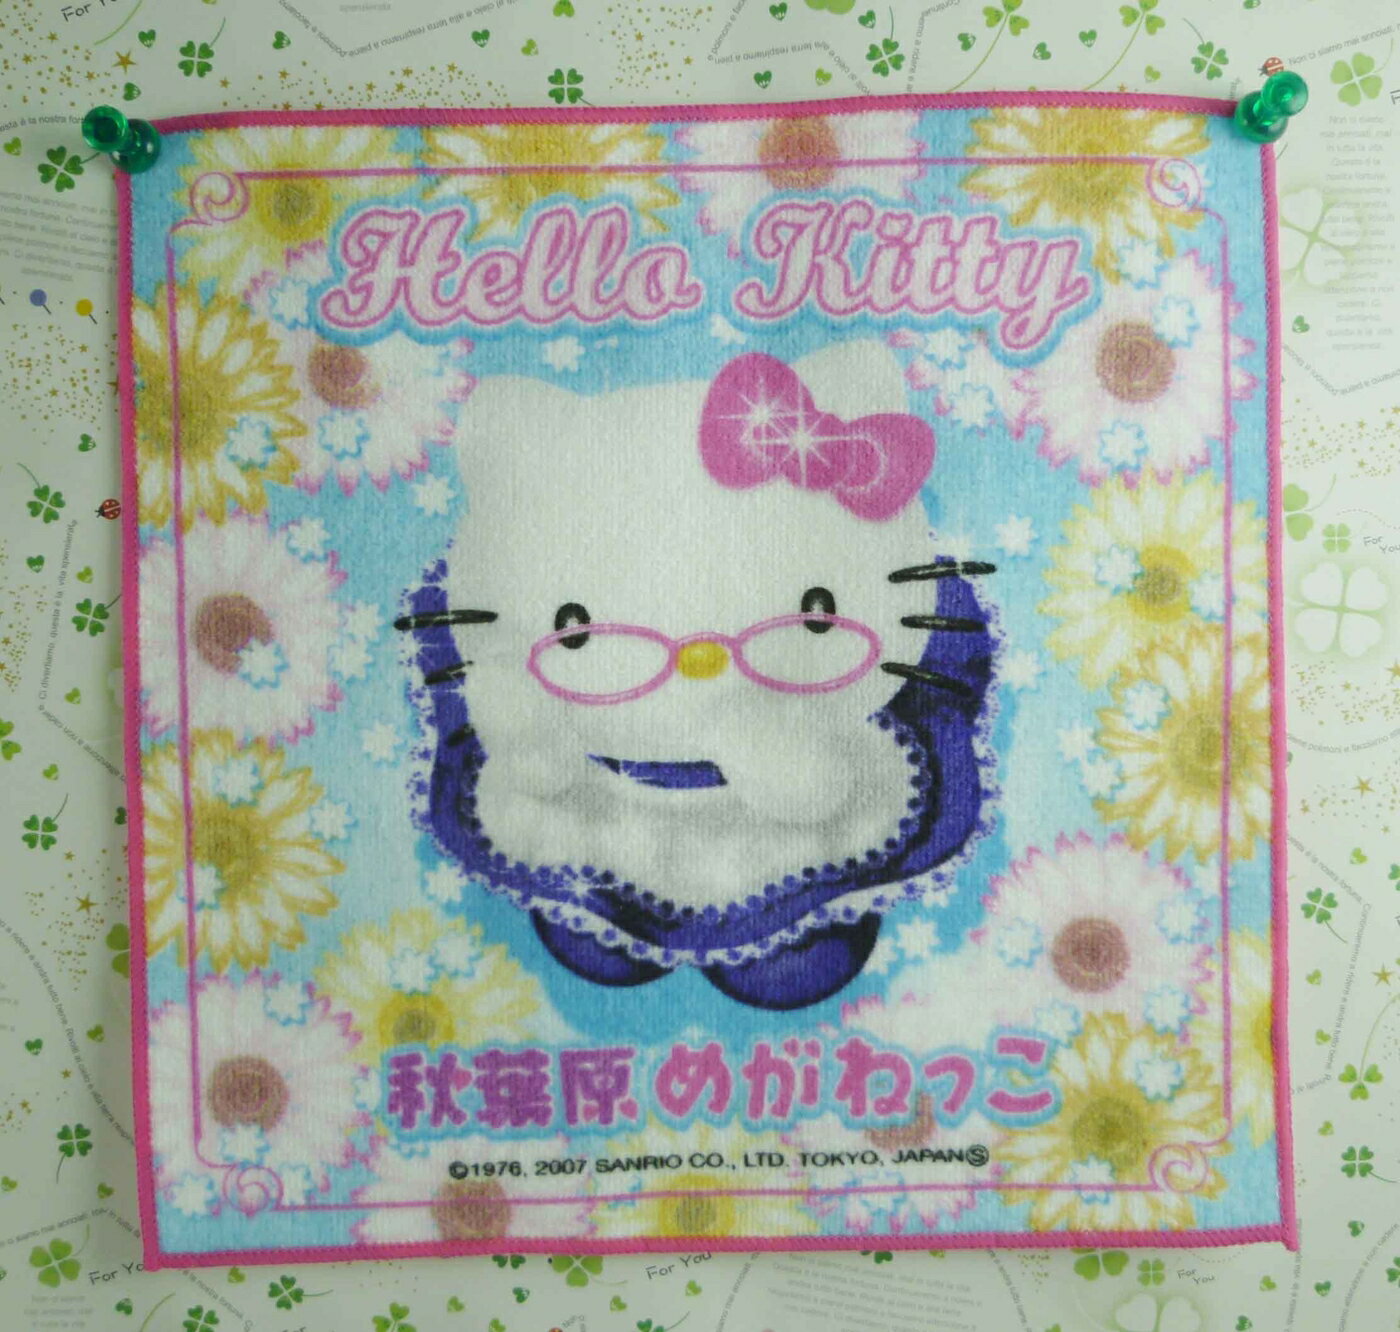 【震撼精品百貨】Hello Kitty 凱蒂貓 方巾-限量款-秋葉原 震撼日式精品百貨